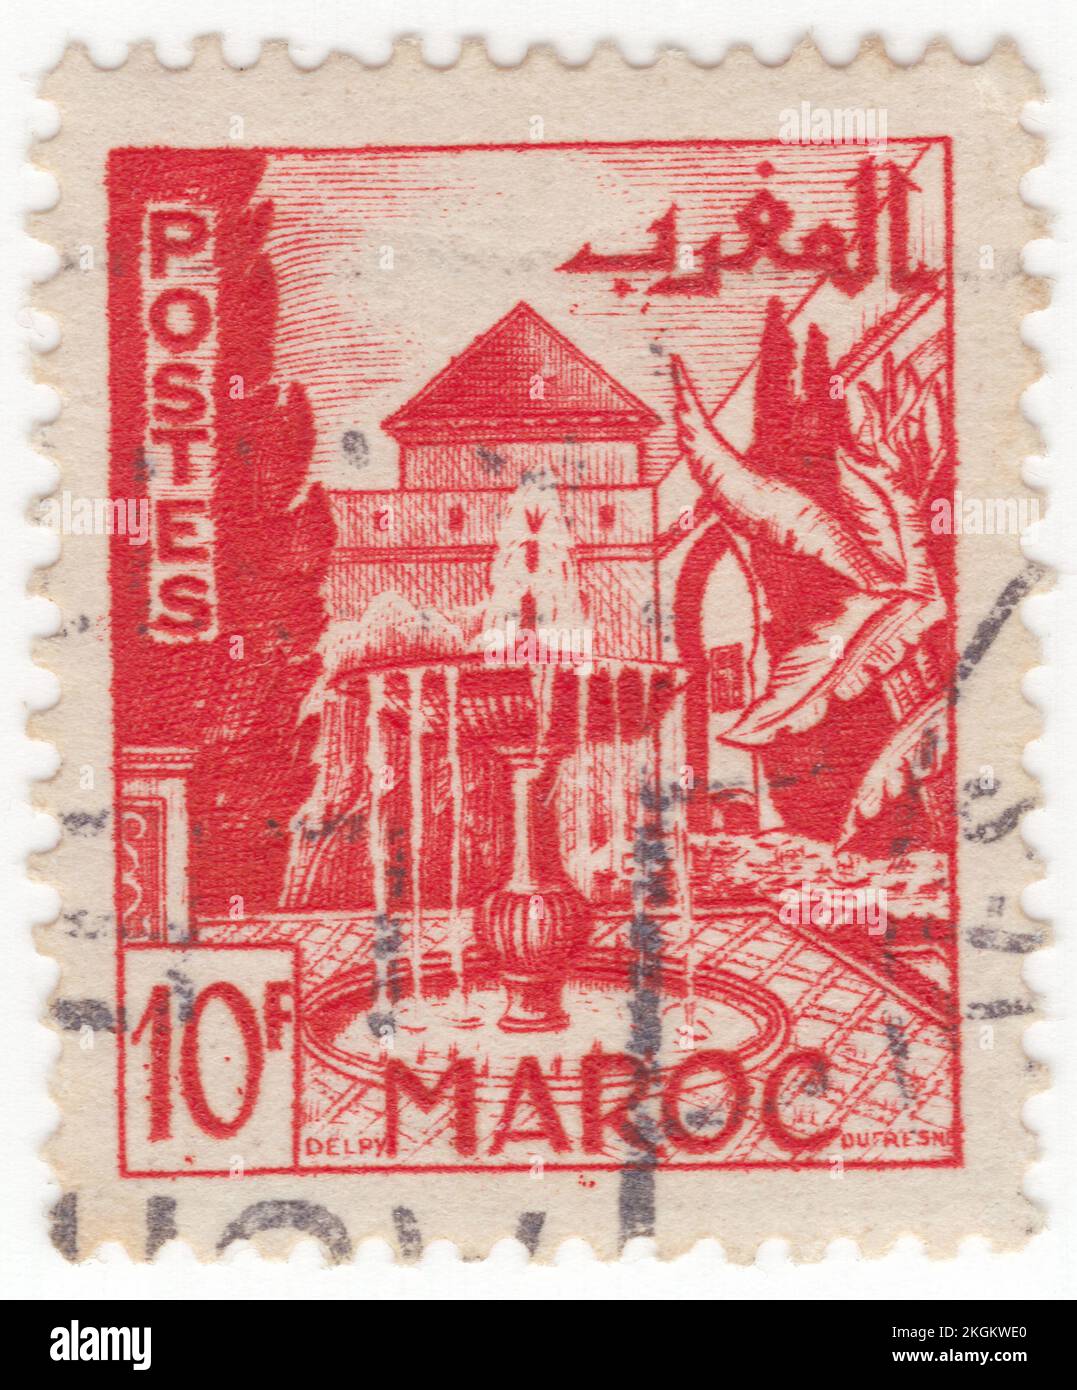 FRANZÖSISCH-MAROKKO - 1949: Eine leuchtend rote Briefmarke mit 10 Francs für den Garten, Meknes, ist eine der vier kaiserlichen Städte Marokkos, die sich im nördlichen Zentrum Marokkos befindet und die sechstgrößte Stadt nach Einwohnern des Königreichs ist. Meknes wurde im 11.. Jahrhundert von den Almoravids als Militärsiedlung gegründet und wurde unter der Herrschaft von Sultan Moulay Ismail (1672-1727), dem Sohn des Gründers der Alaouiten-Dynastie, zur Hauptstadt Marokkos. Moulay Ismail schuf einen riesigen Kaiserpalastkomplex und gab der Stadt umfangreiche Befestigungsanlagen und monumentale Tore Stockfoto